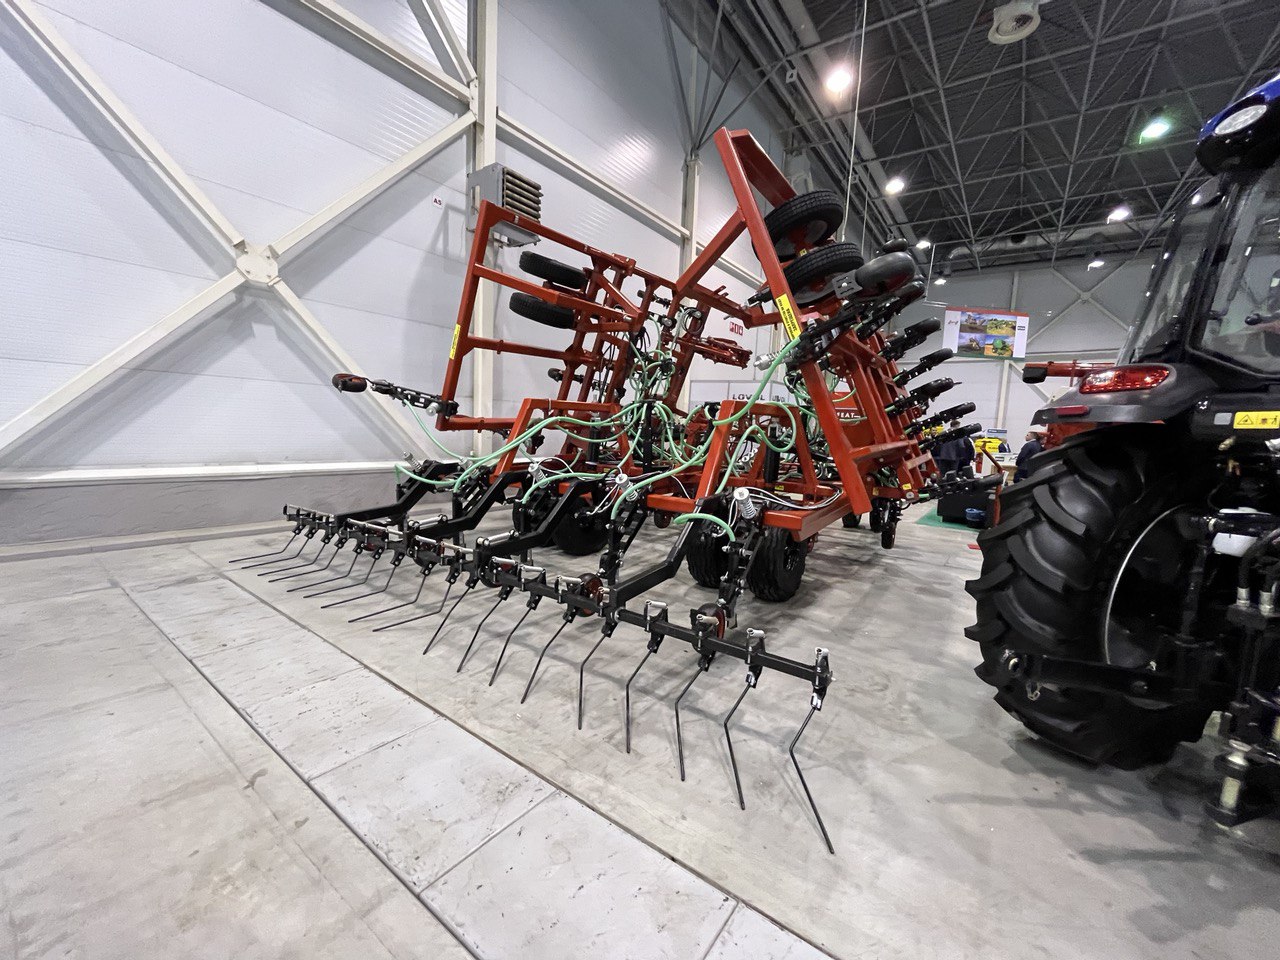 Посевной комплекс AP-9900 с новой опцией, бороной-выравнивателем, на Международной агропромышленной выставке «Сибирская аграрная неделя»